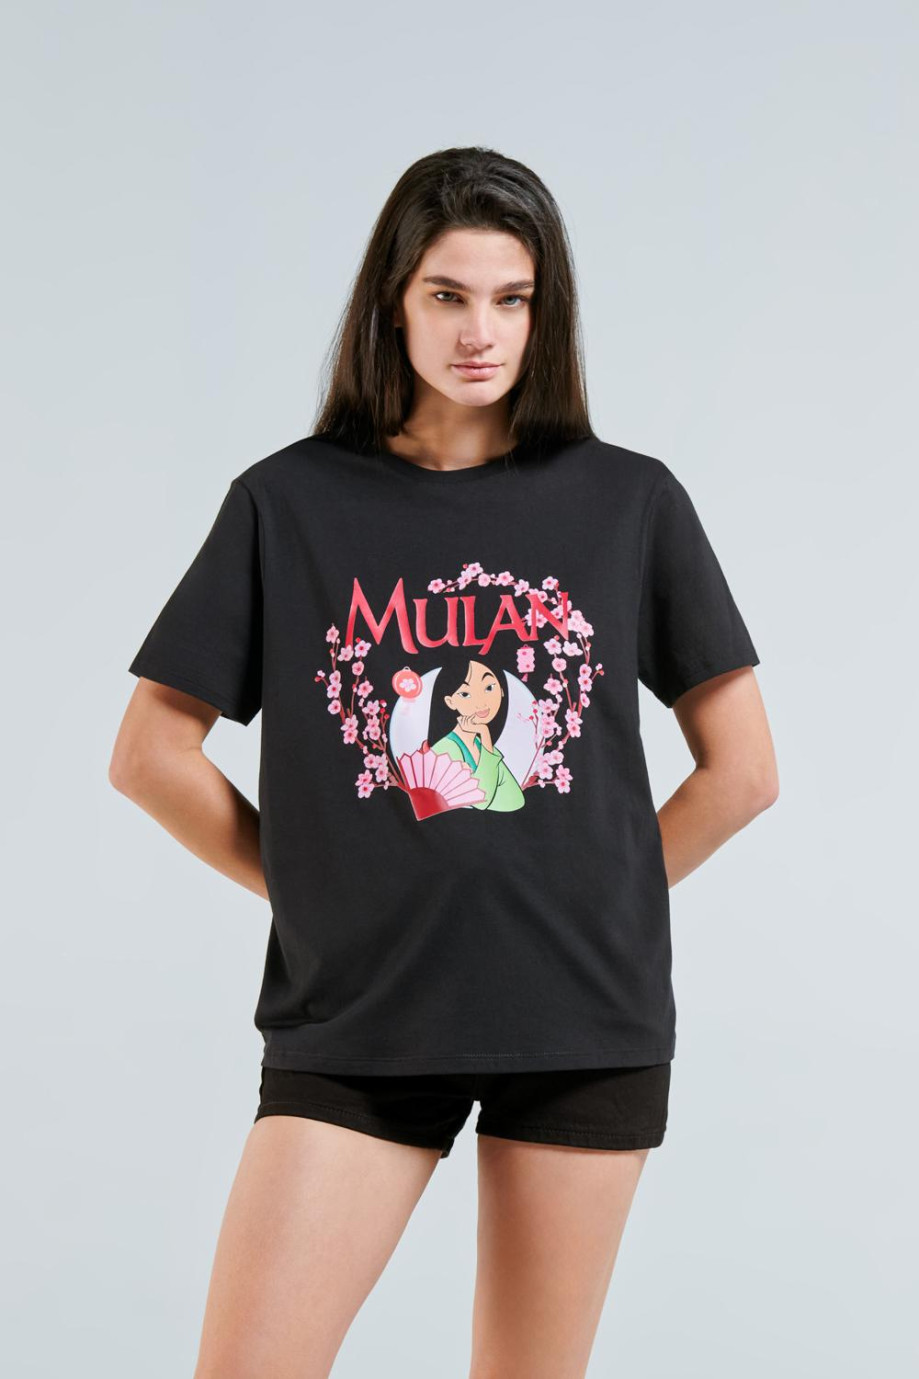 Camiseta unicolor manga corta con estampado de Princesas en frente